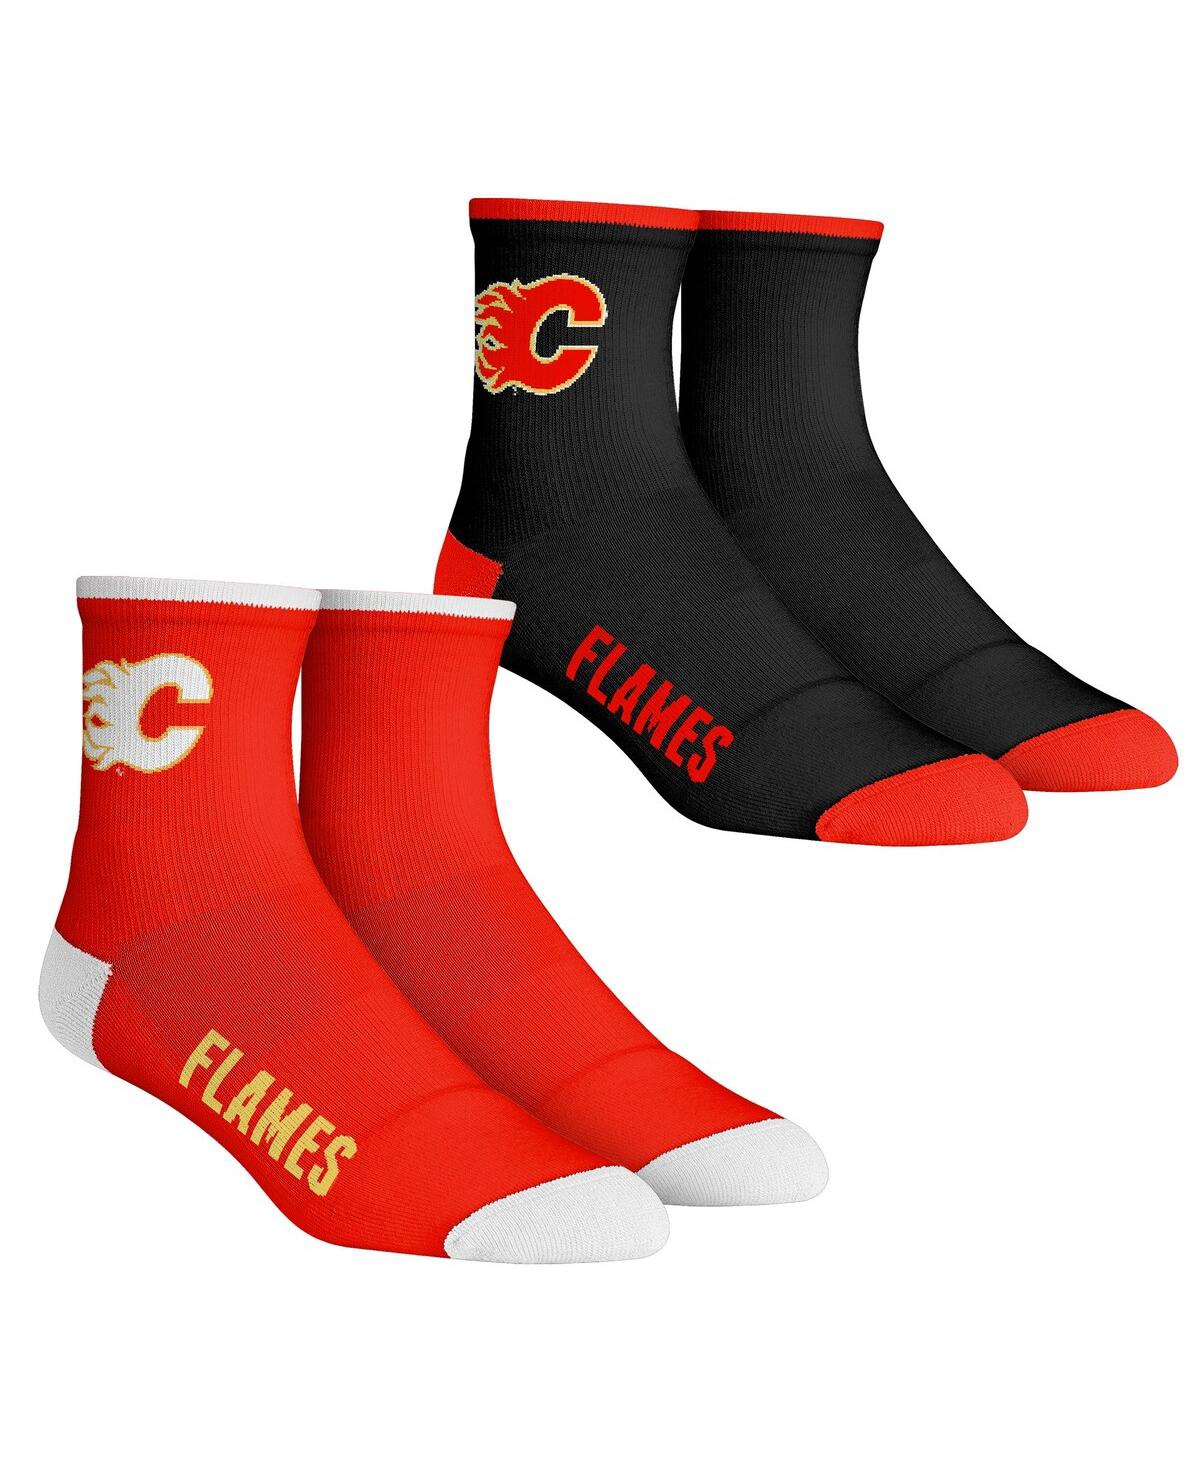 Men's Rock 'Em Socks Calgary Flames Core Team 2-Pack Quarter Length Sock Set - Black, Red